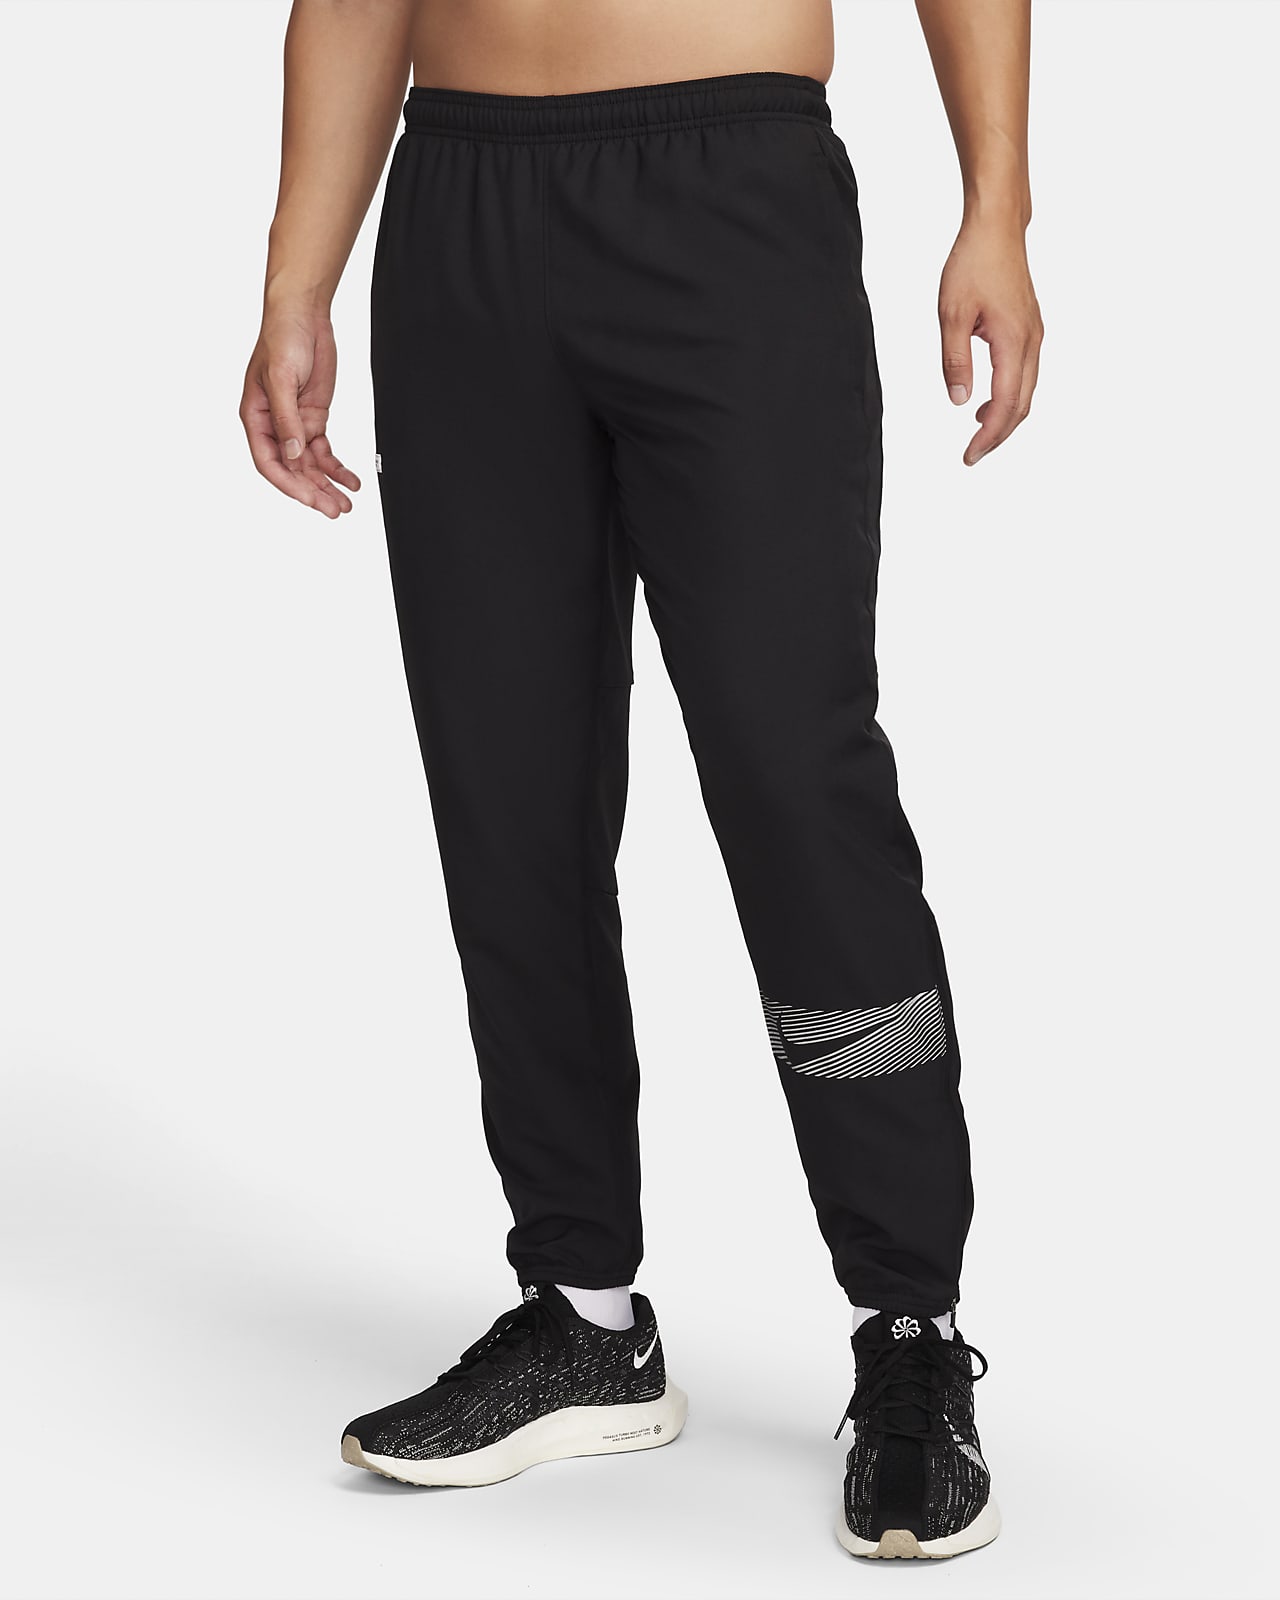 Pantalon de running tissé Dri-FIT Nike Challenger Flash pour homme